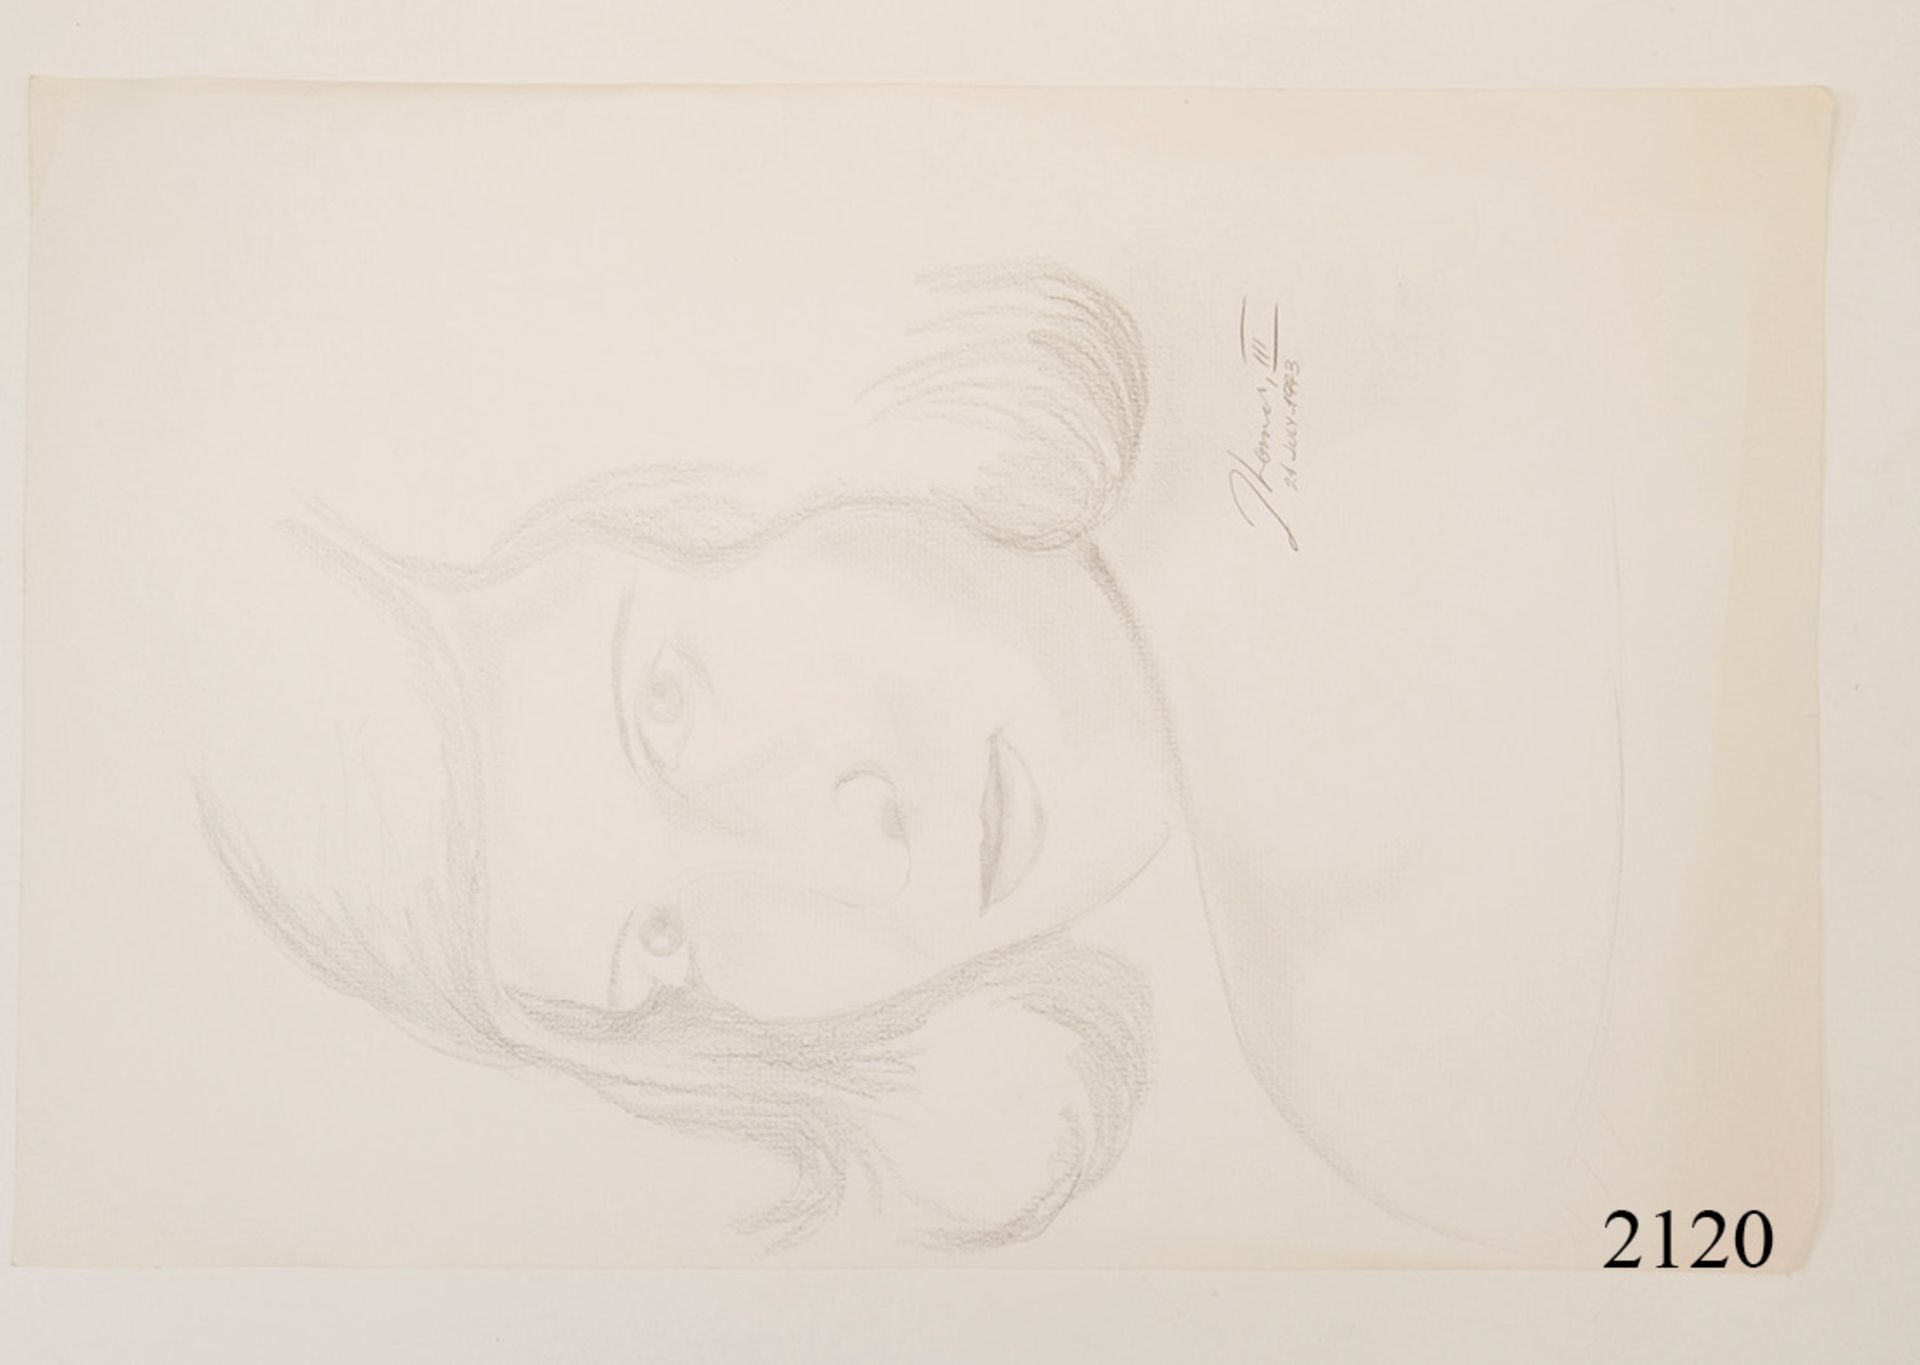 Konrad Kujau: Handzeichung von Eva BraunBleistift auf Büttenpapier. Signiert 1943. 46x30cm. Zustand: